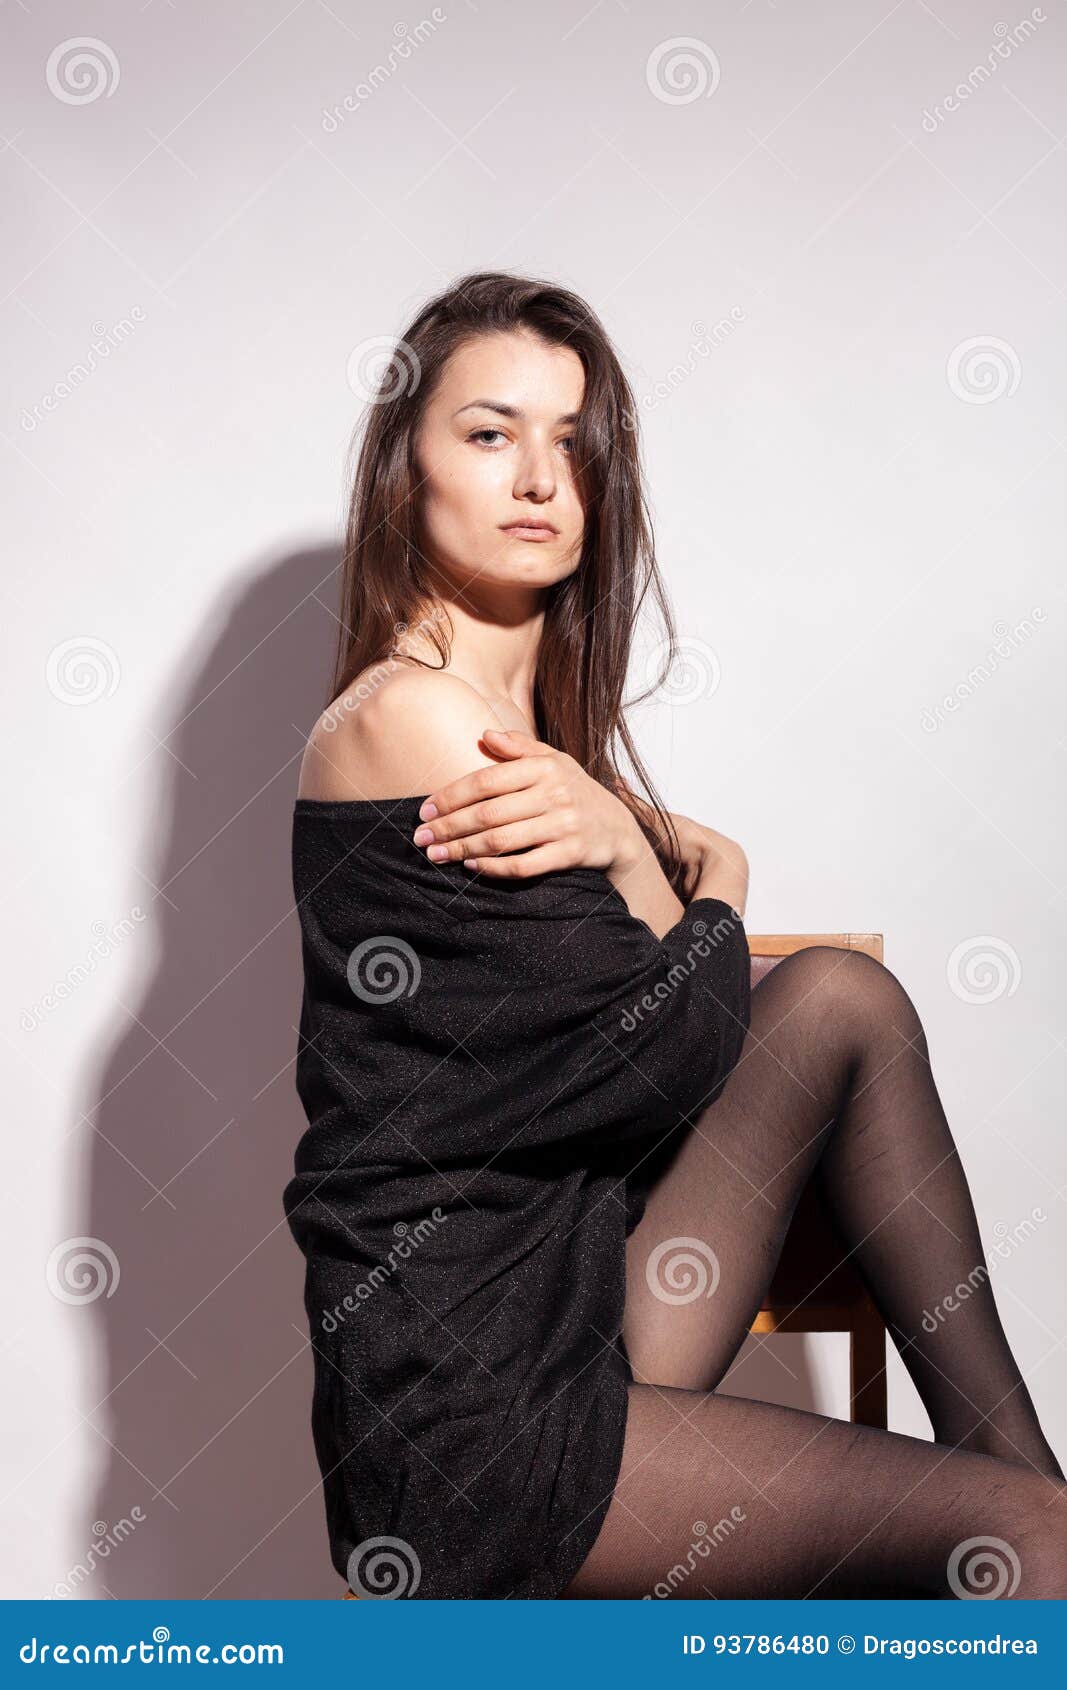 Busty Women In Stockings